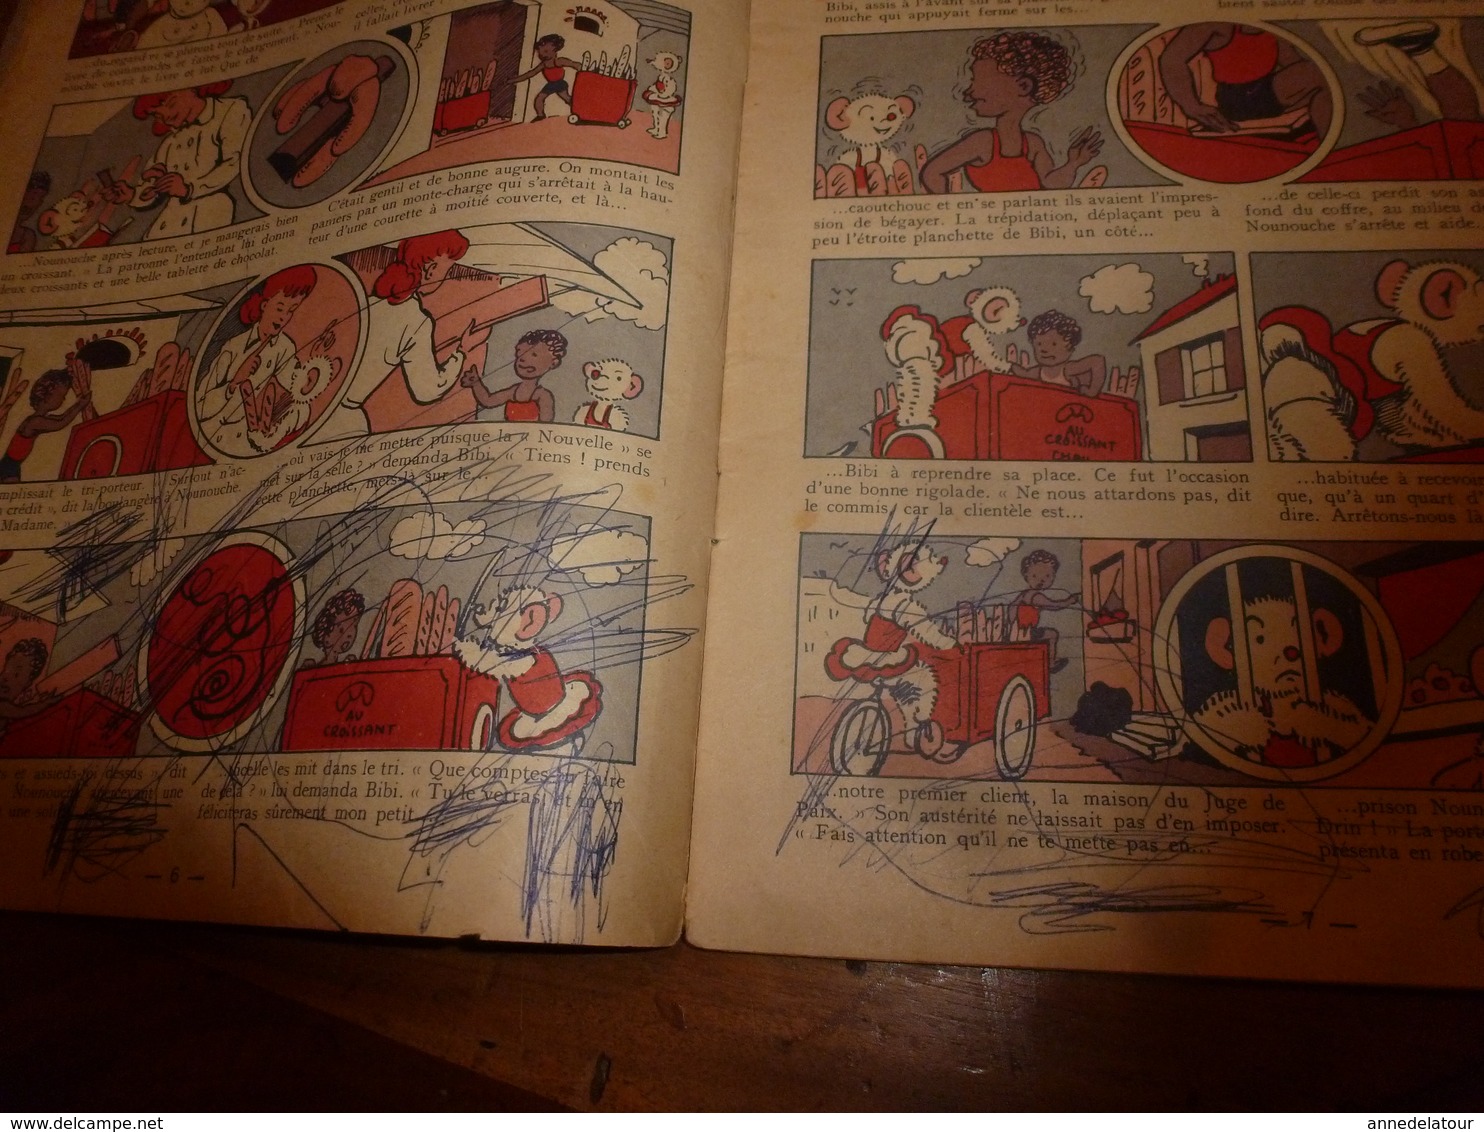 1954 NOUNOUCHE  boulangère  "au croissant chaud",   texte et dessins de DURST